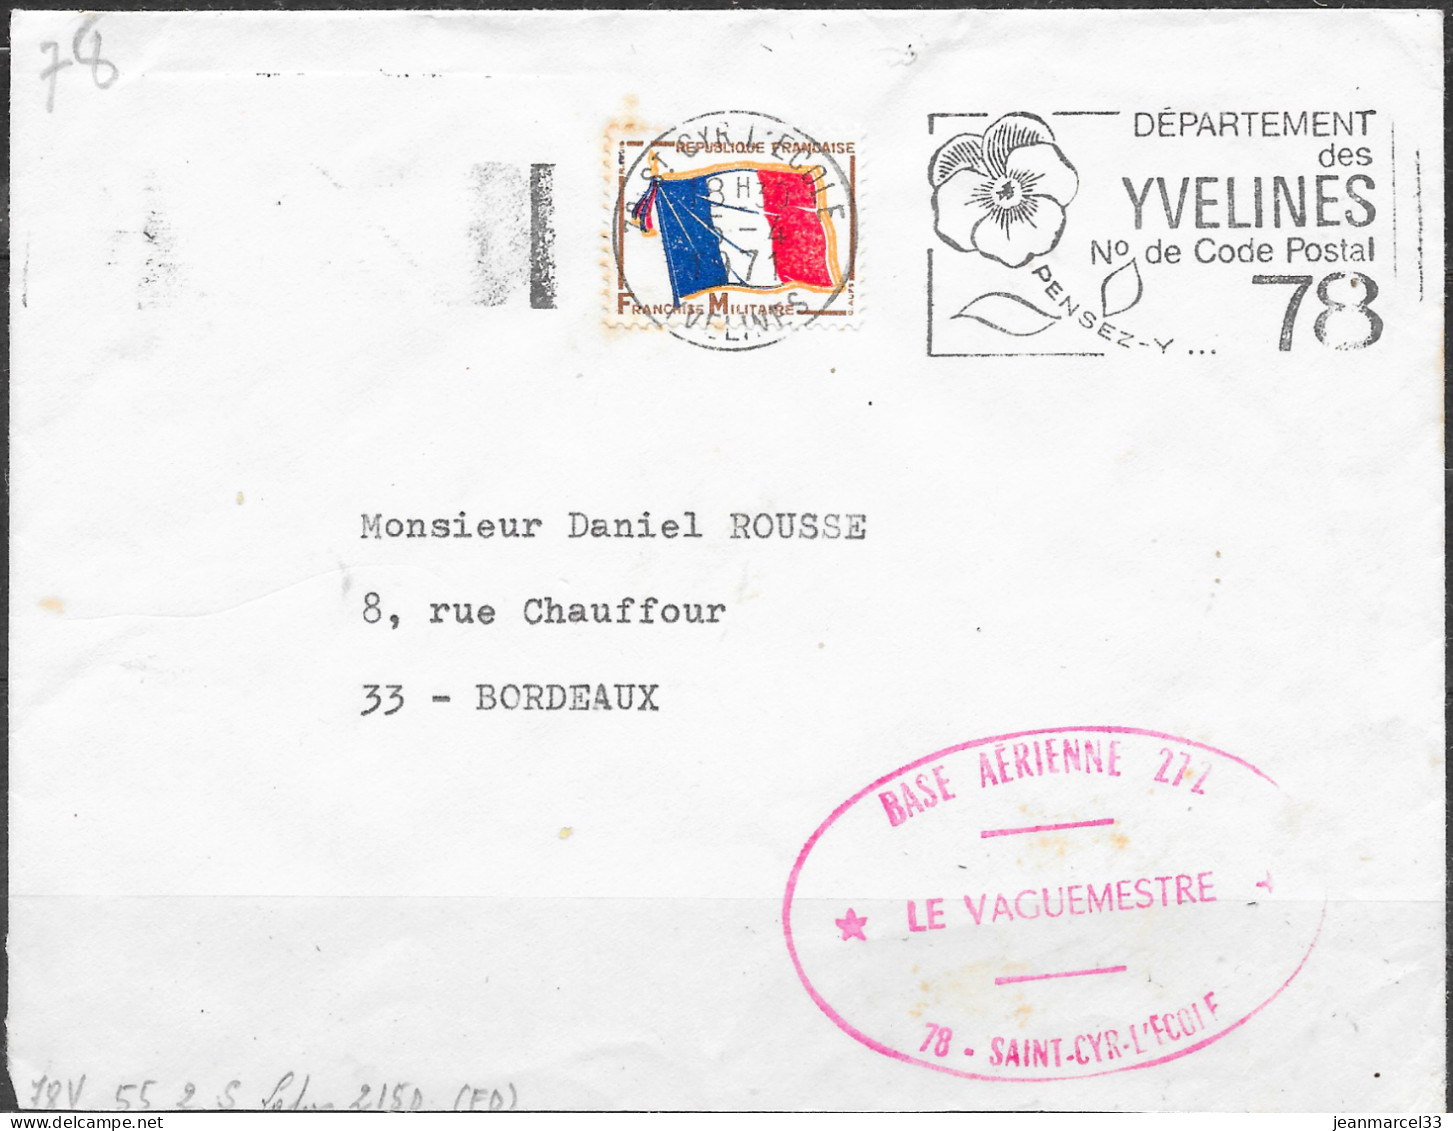 Base Aérienne 272  78-Saint-Cyr-l'Ecole / Le Vaguemestre  Flamme O= 78 St Cyr L'Ecole 5-4 1971 - Poste Aérienne Militaire